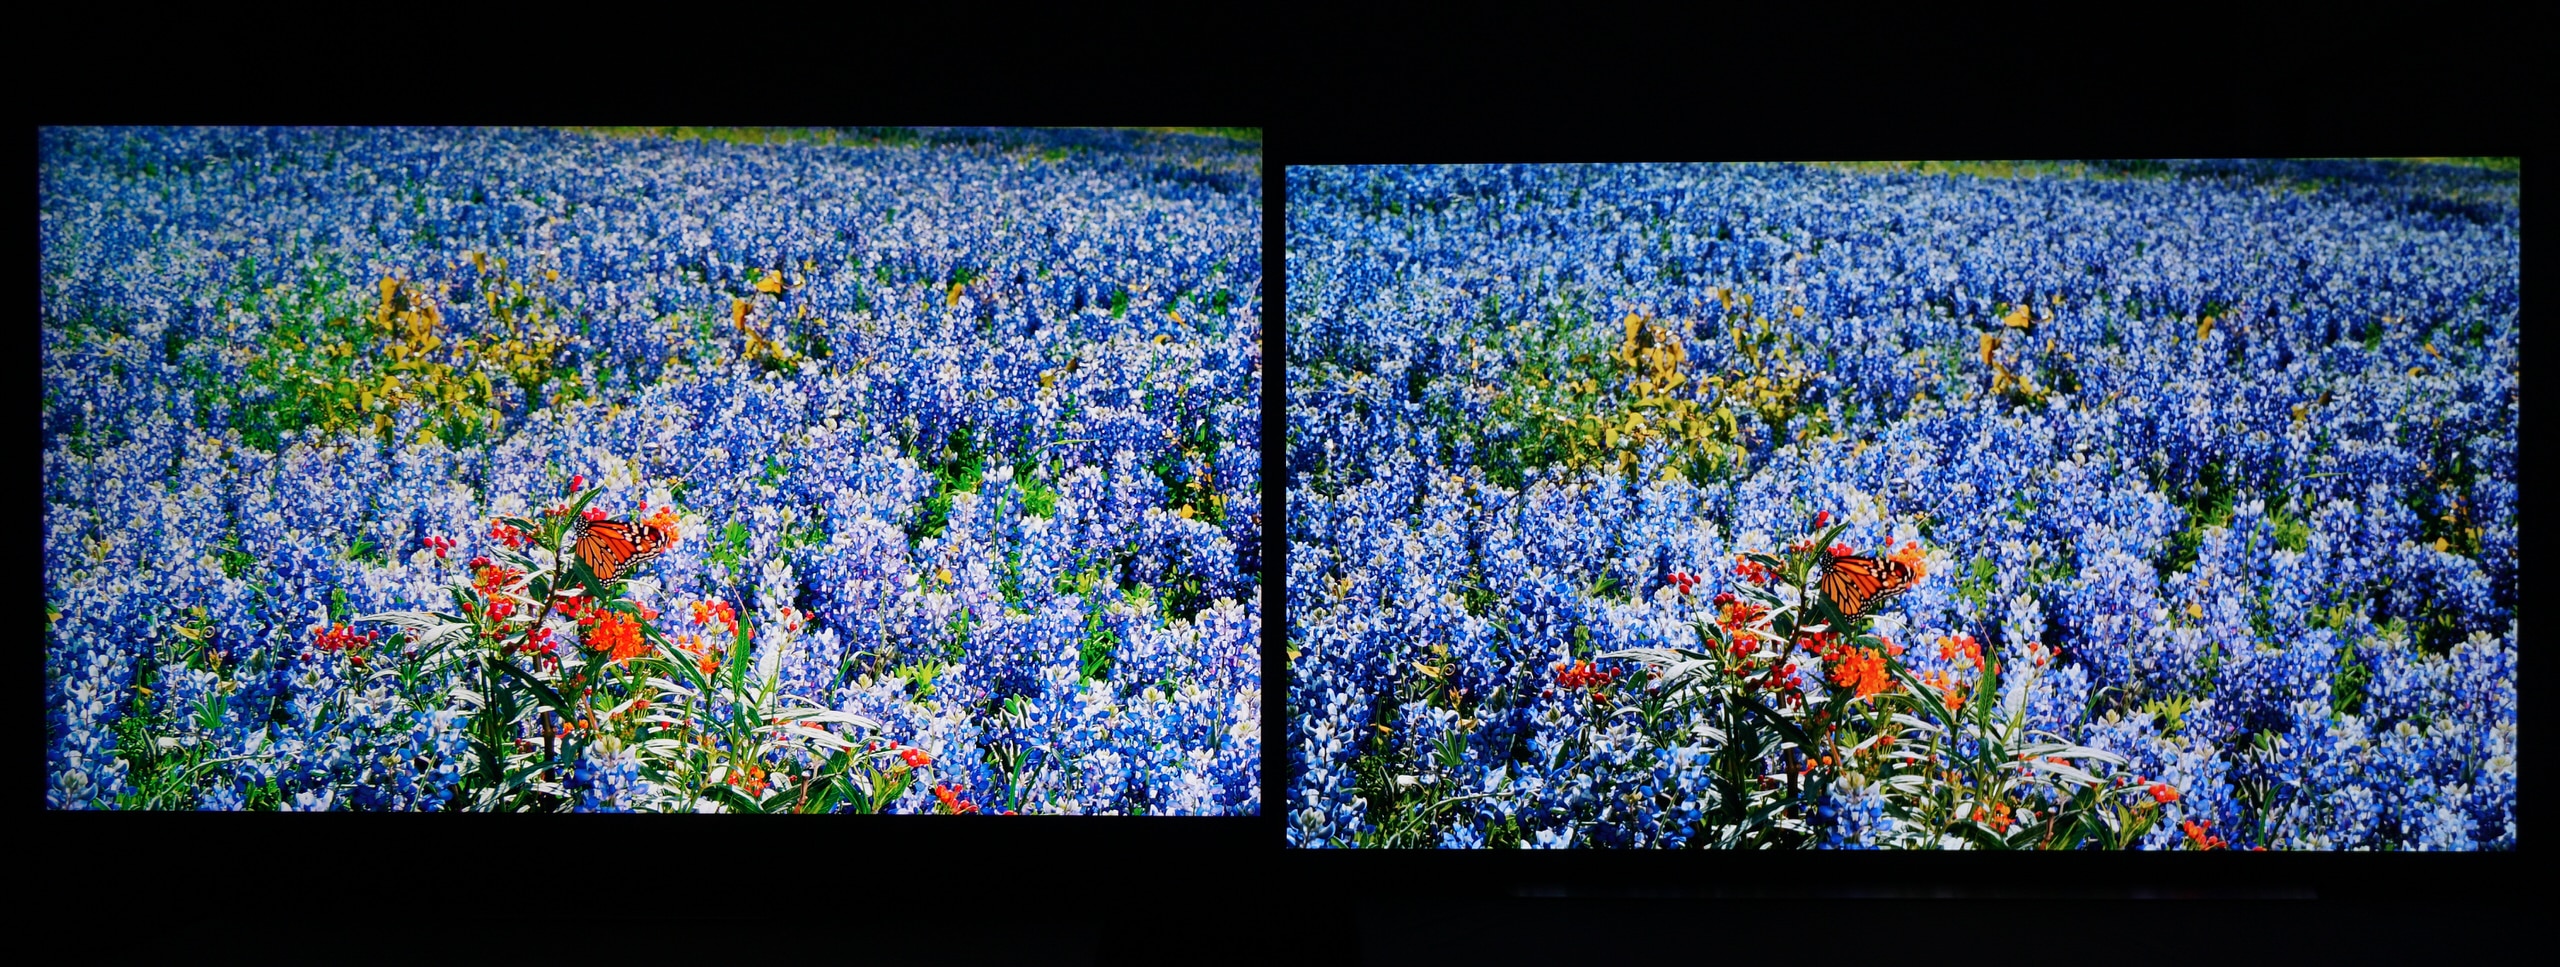 So sánh TV QLED và TV OLED: Chất lượng hình ảnh vượt trội của QLED đem đến trải nghiệm tốt nhất